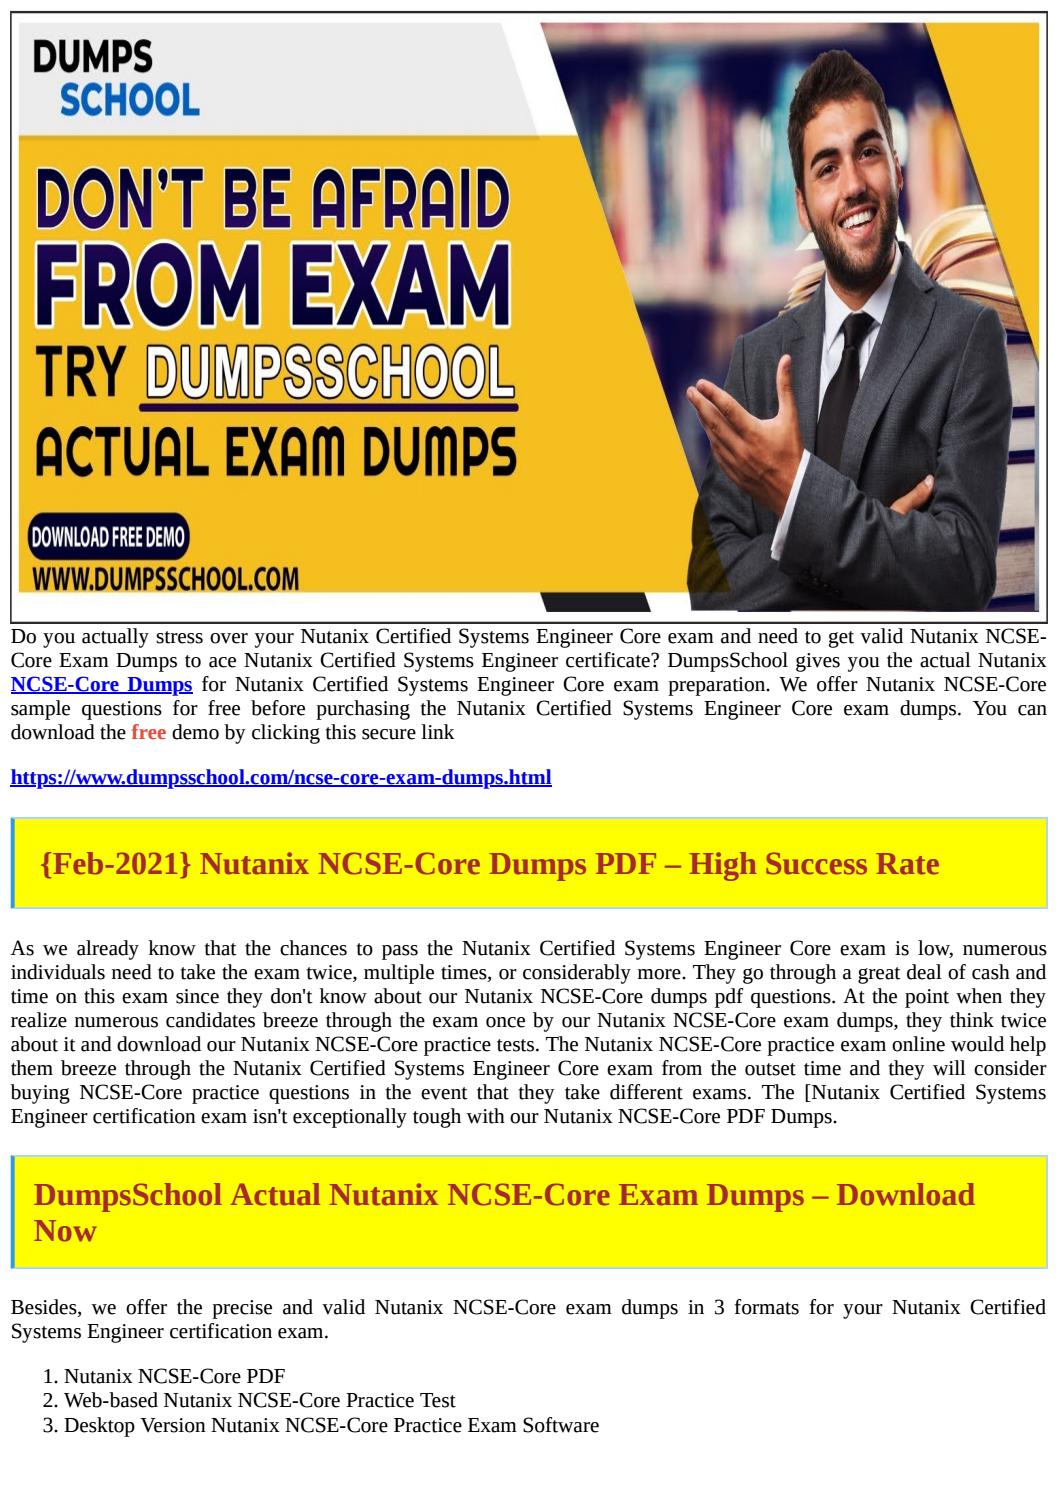 Nutanix NCSE-Core Übungsmaterialien, NCSE-Core Online Prüfung